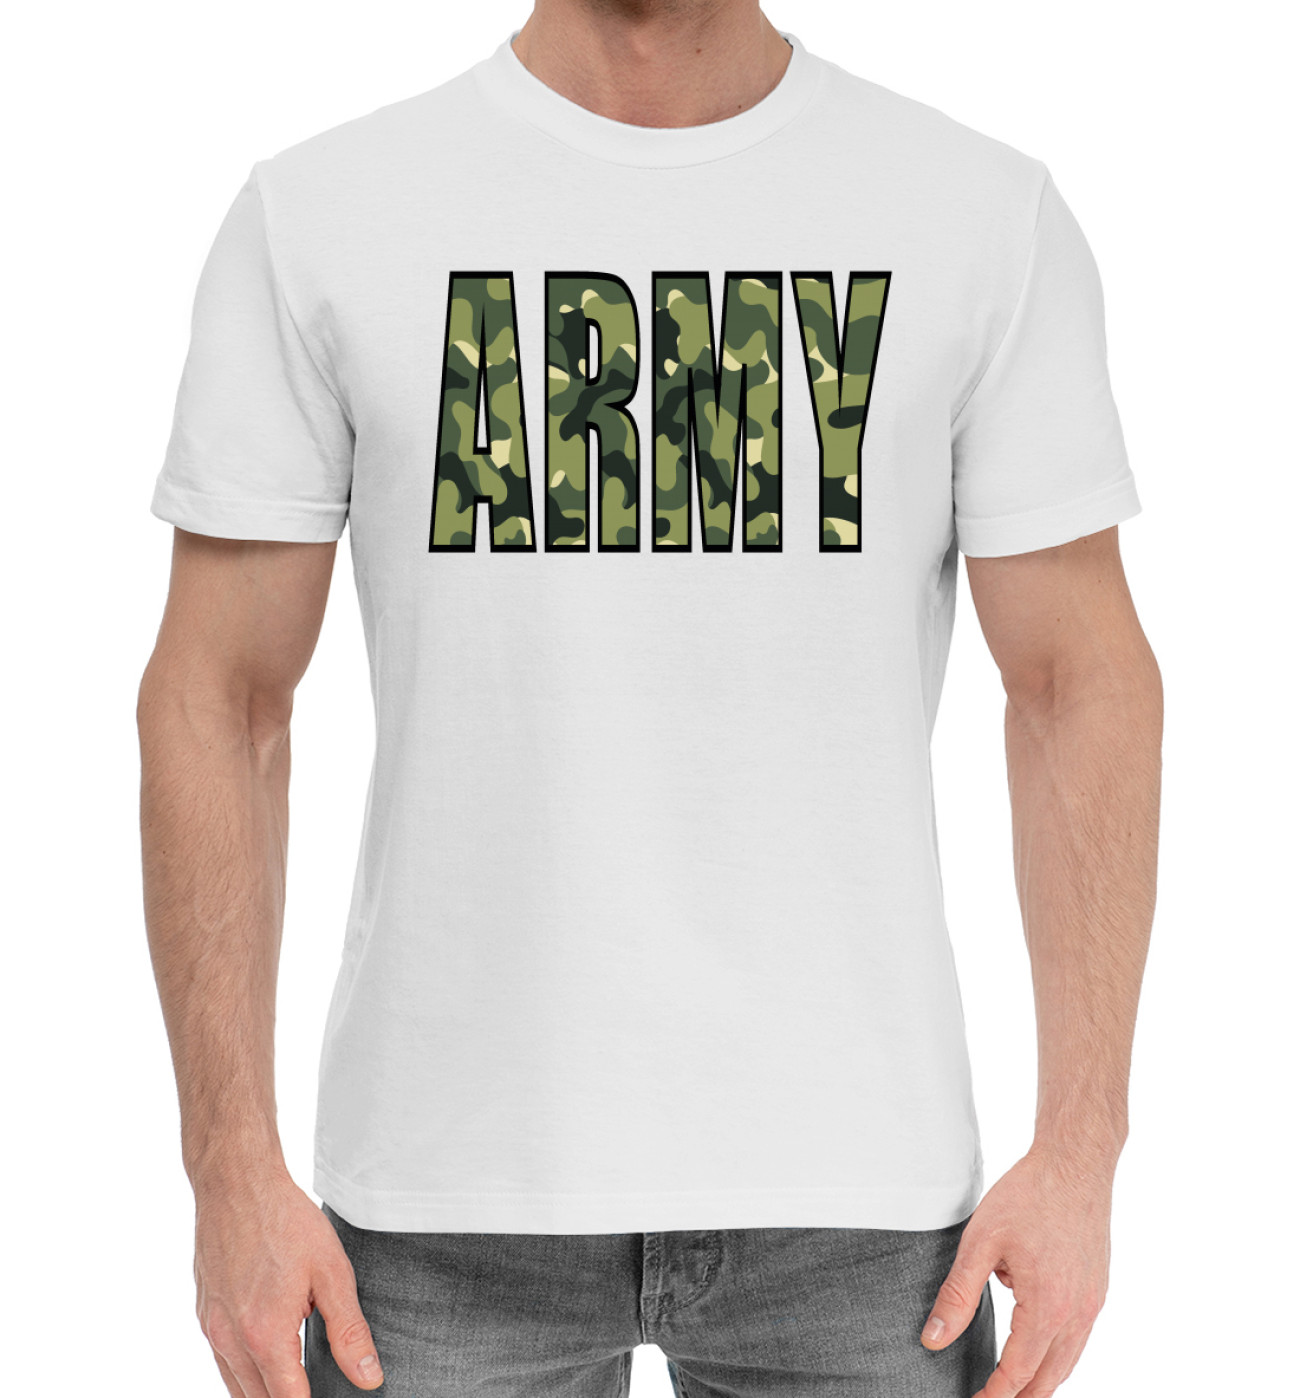 Армейский надпись. Футболка Army. Футболка с надписью Army. Армейские футболки с надписями. Футболка армии АРМИ.